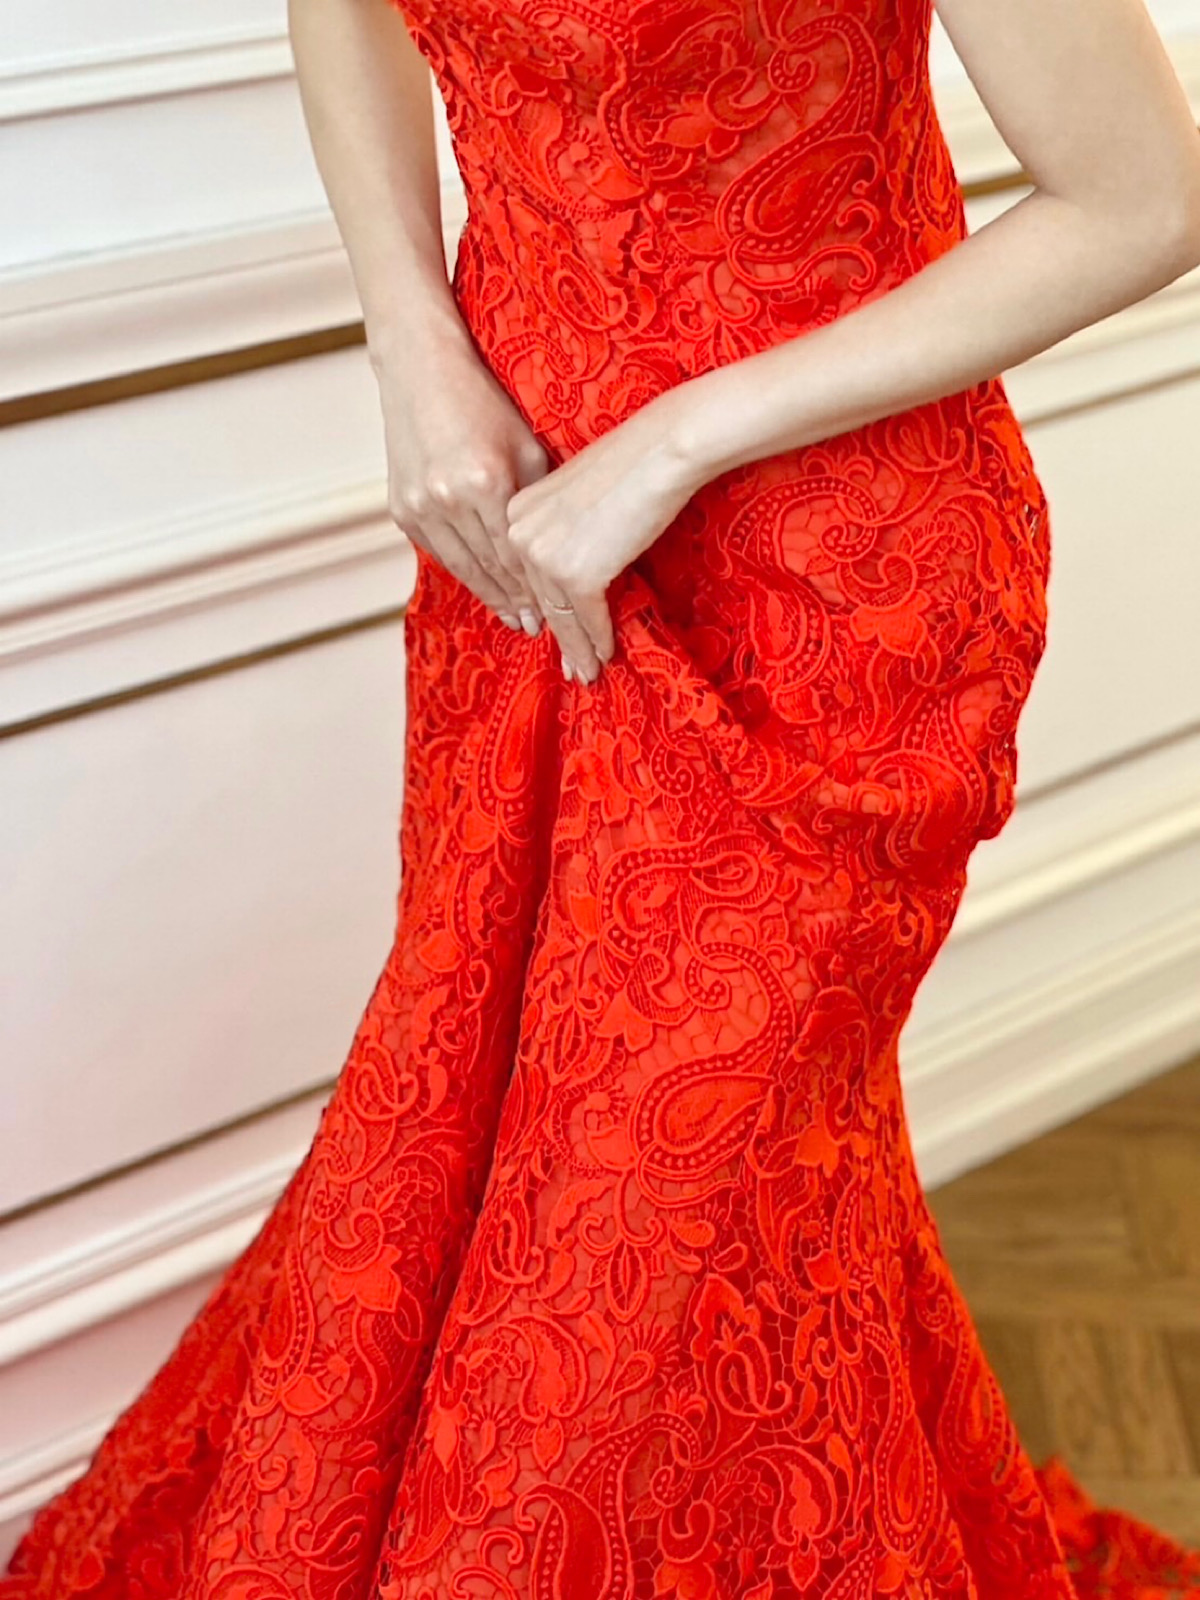 感度の高いお洒落な花嫁のお色直しにおすすめする、ギュピールレースが印象的なレッドのマーメイドラインのカラードレス